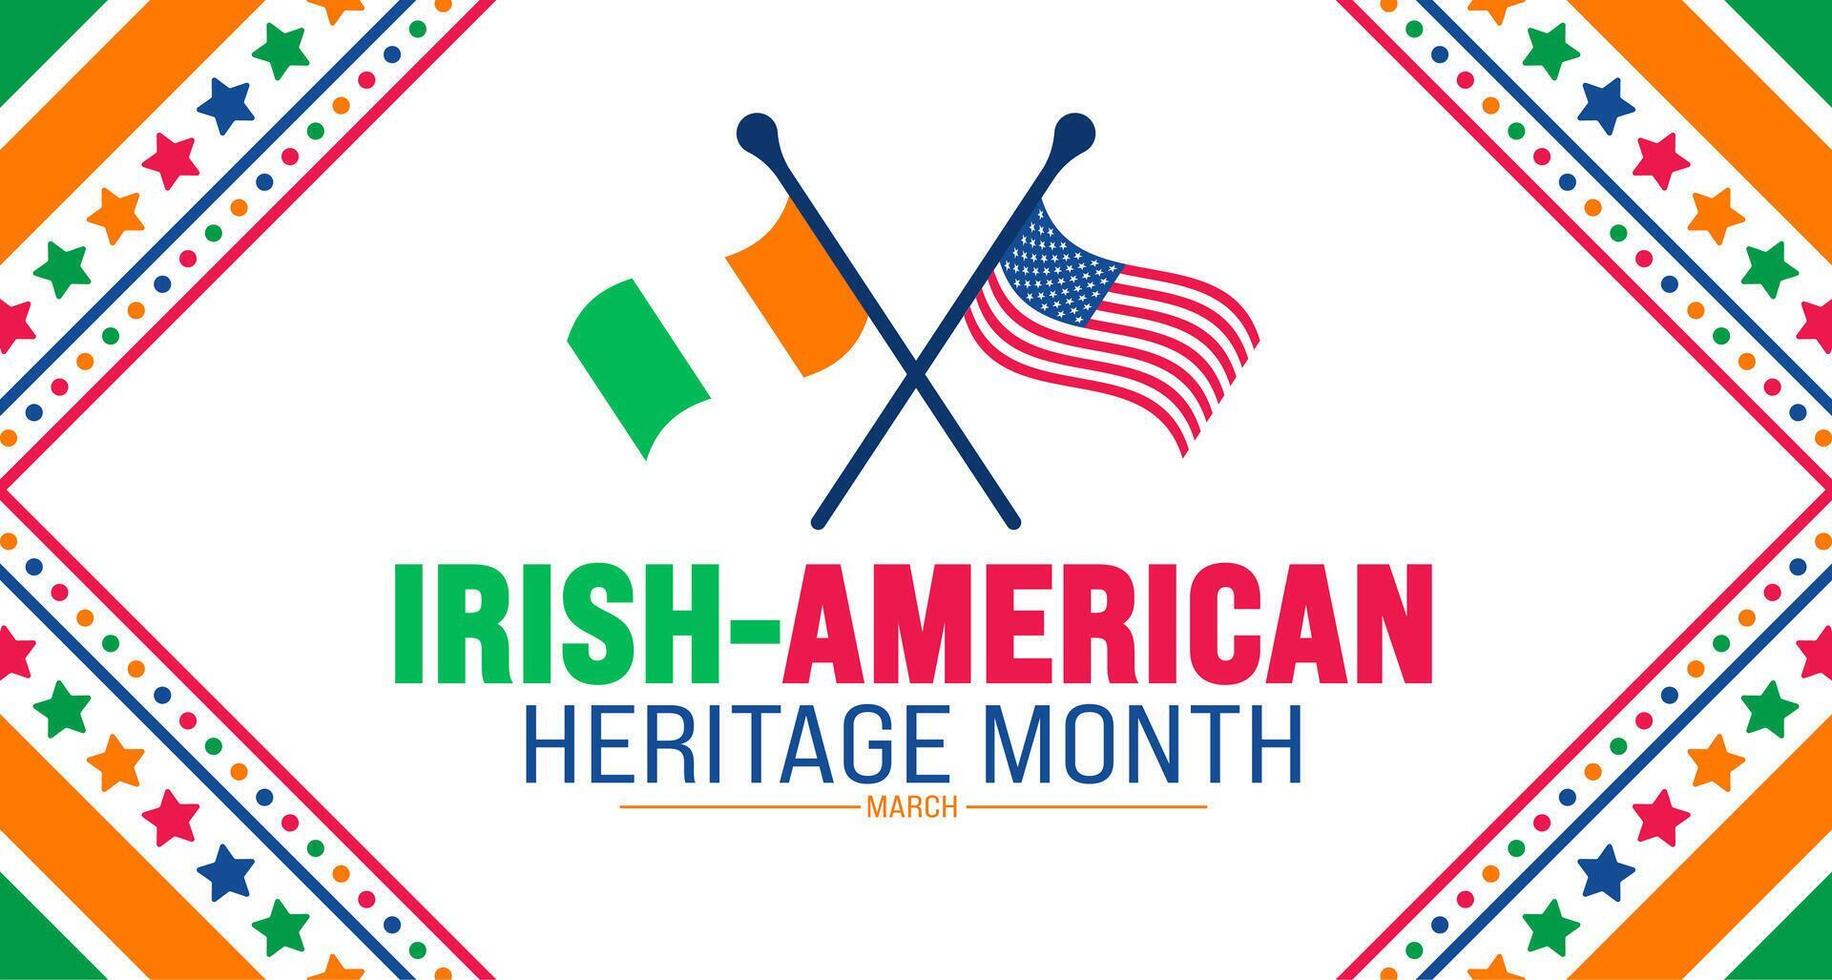 marzo es irlandesa americano patrimonio mes antecedentes diseño modelo con unido estado y Irlanda nacional bandera. utilizar a fondo, bandera, cartel, tarjeta, y póster diseño modelo. vector ilustración